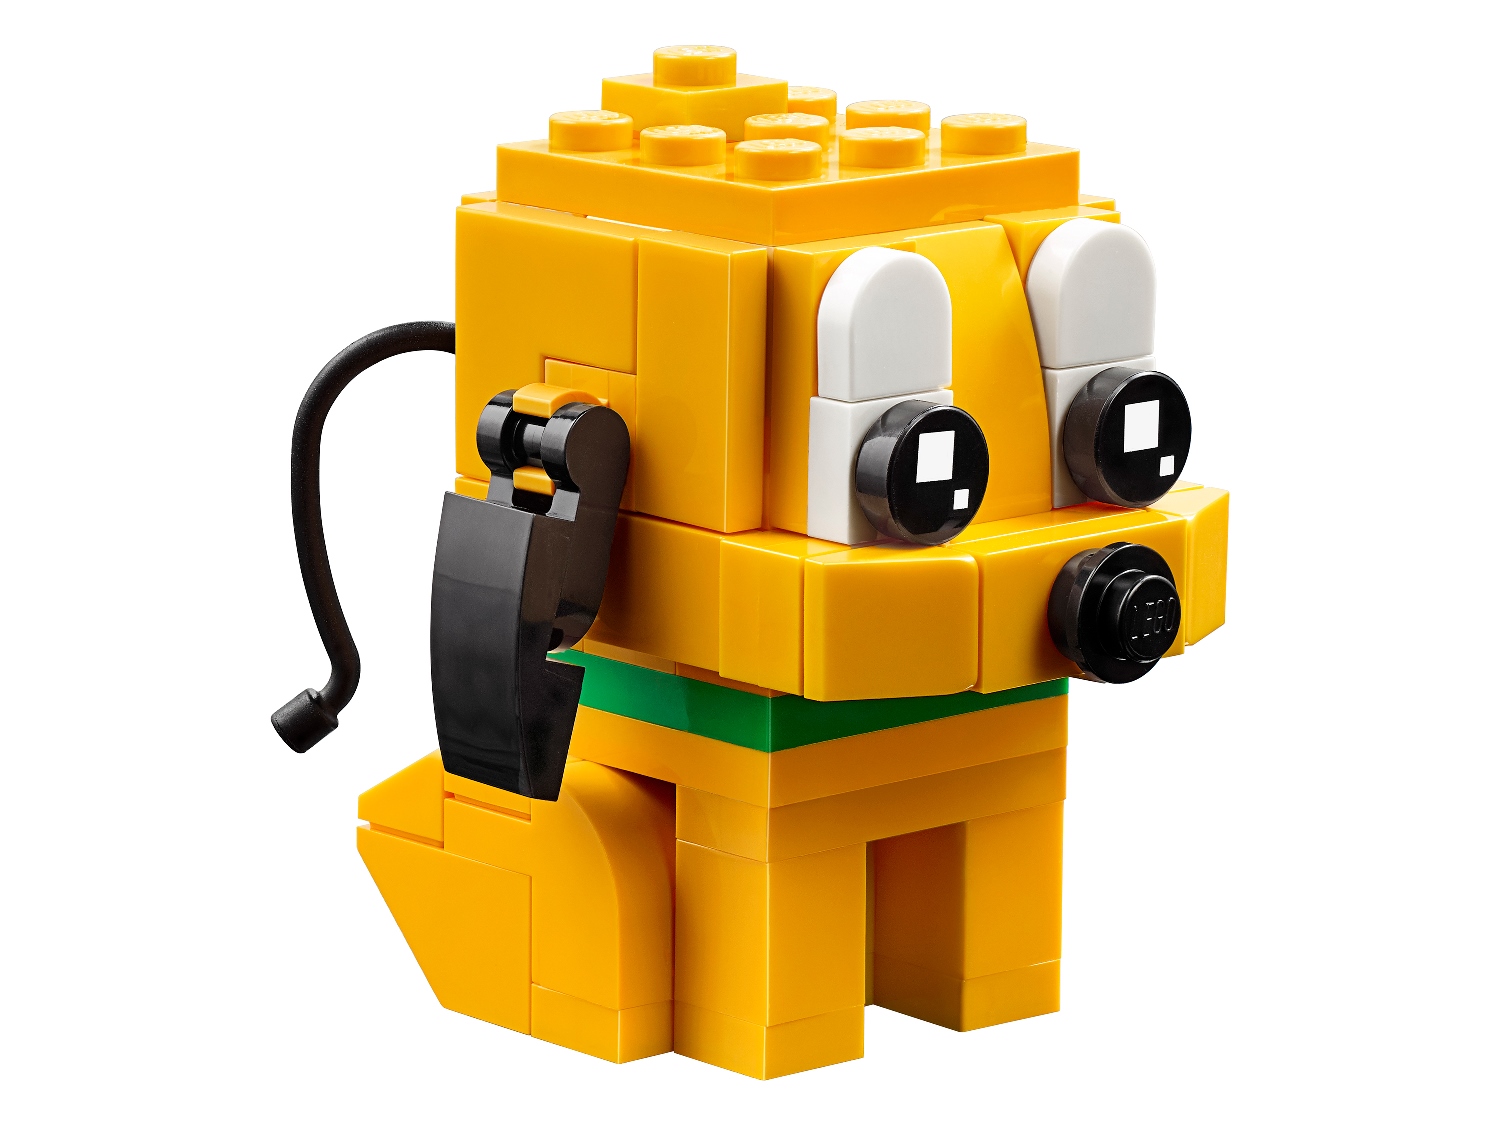 Lego BrickHeadz 40378 Гуфи и Плуто